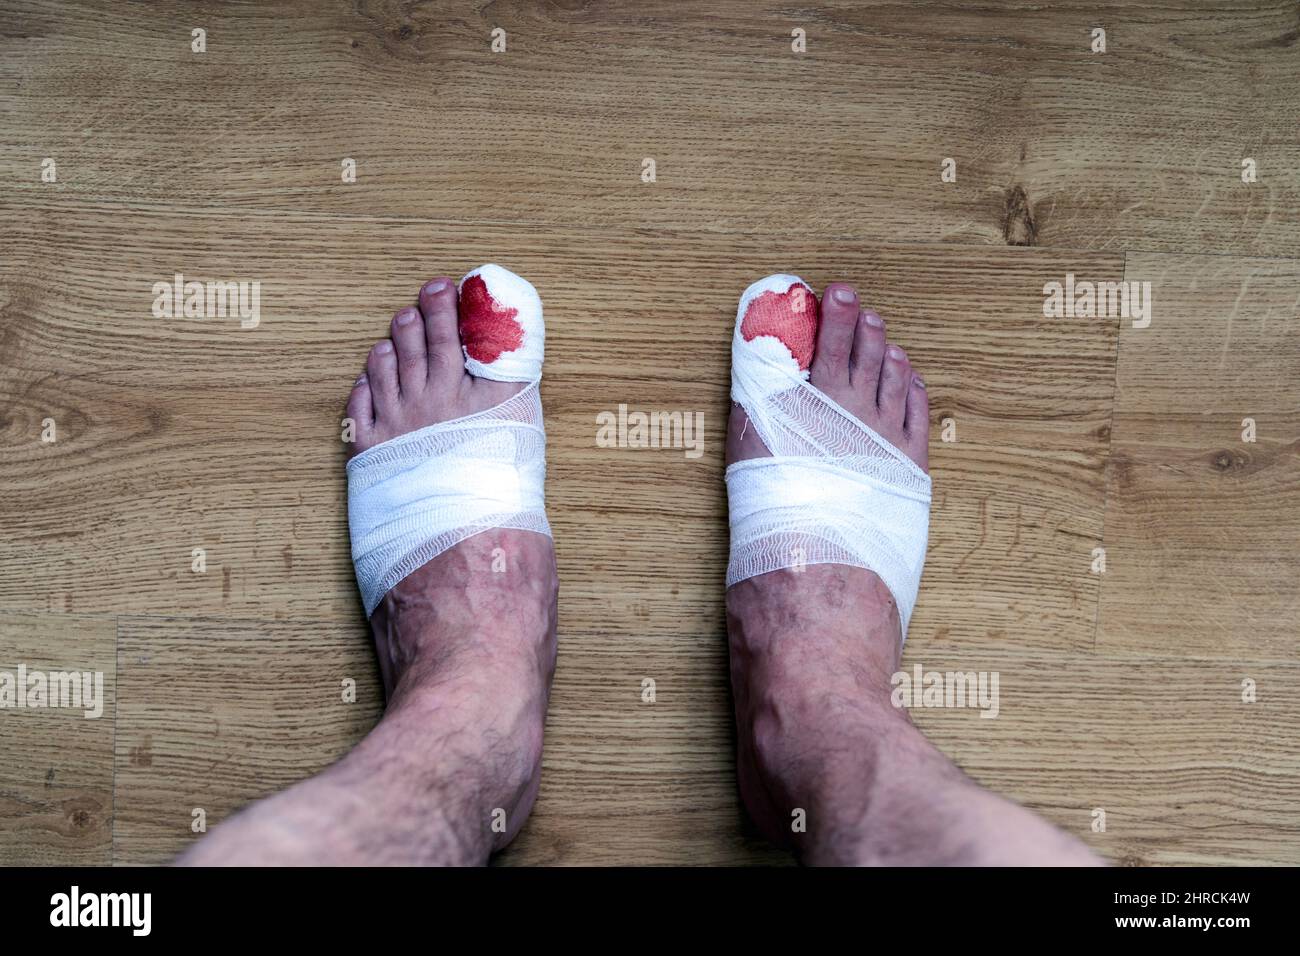 Las piernas de un hombre con sangre vendaron los dedos de los pies grandes de pie en el suelo Foto de stock